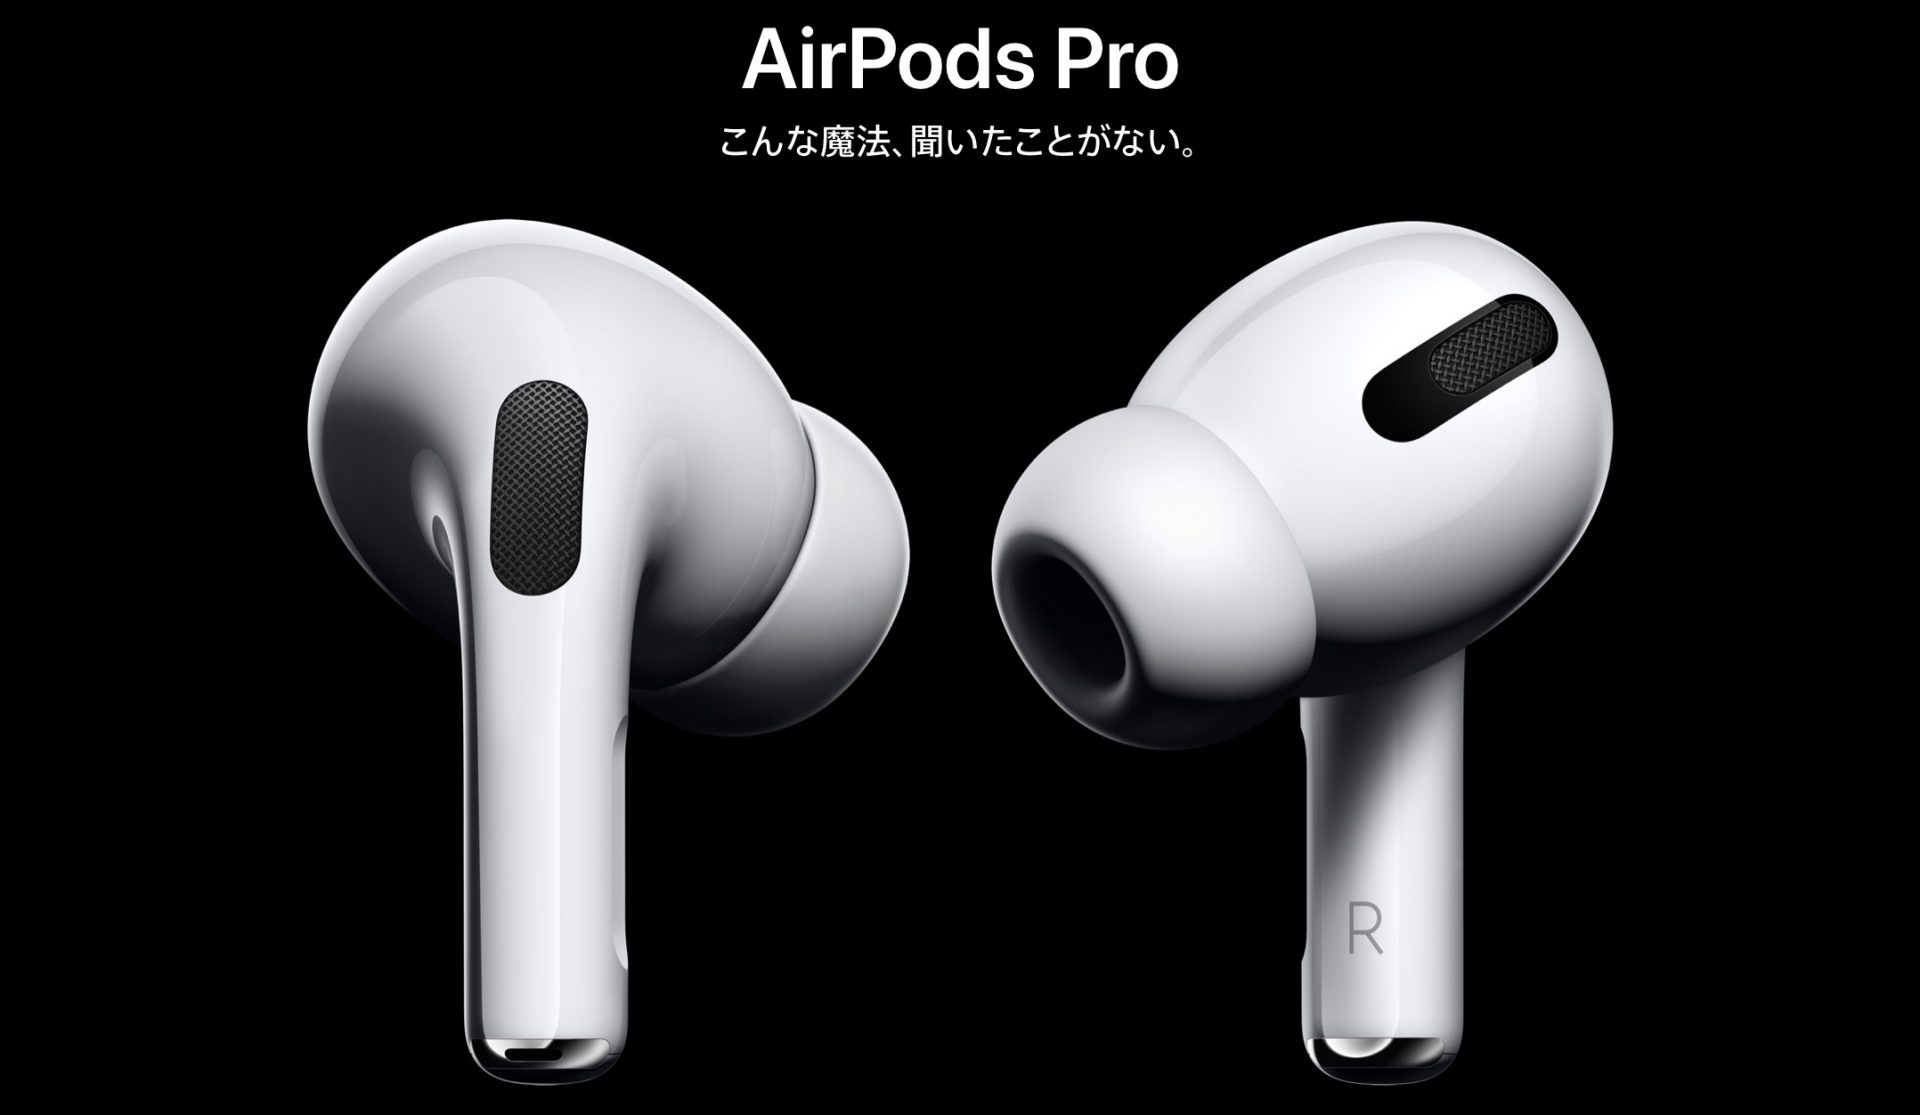 超品薄の｢AirPods Pro｣だが、まだ即ゲットの可能性はある!! | iPhone + iPad FAN (^_^)v